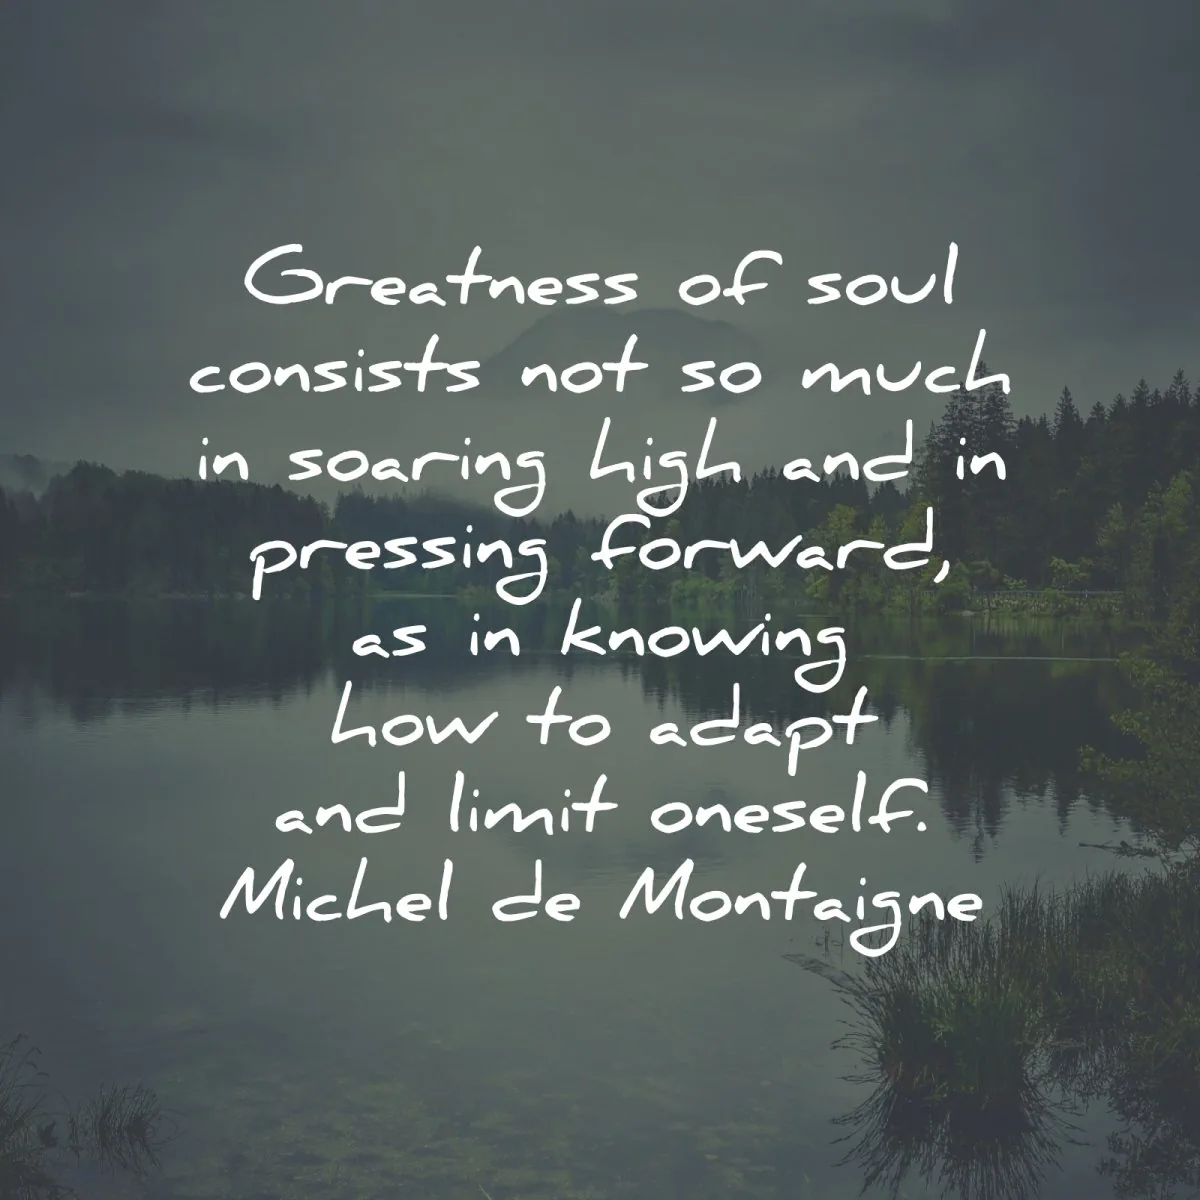 michel de montaigne quotes greatness soul limit oneself wisdom